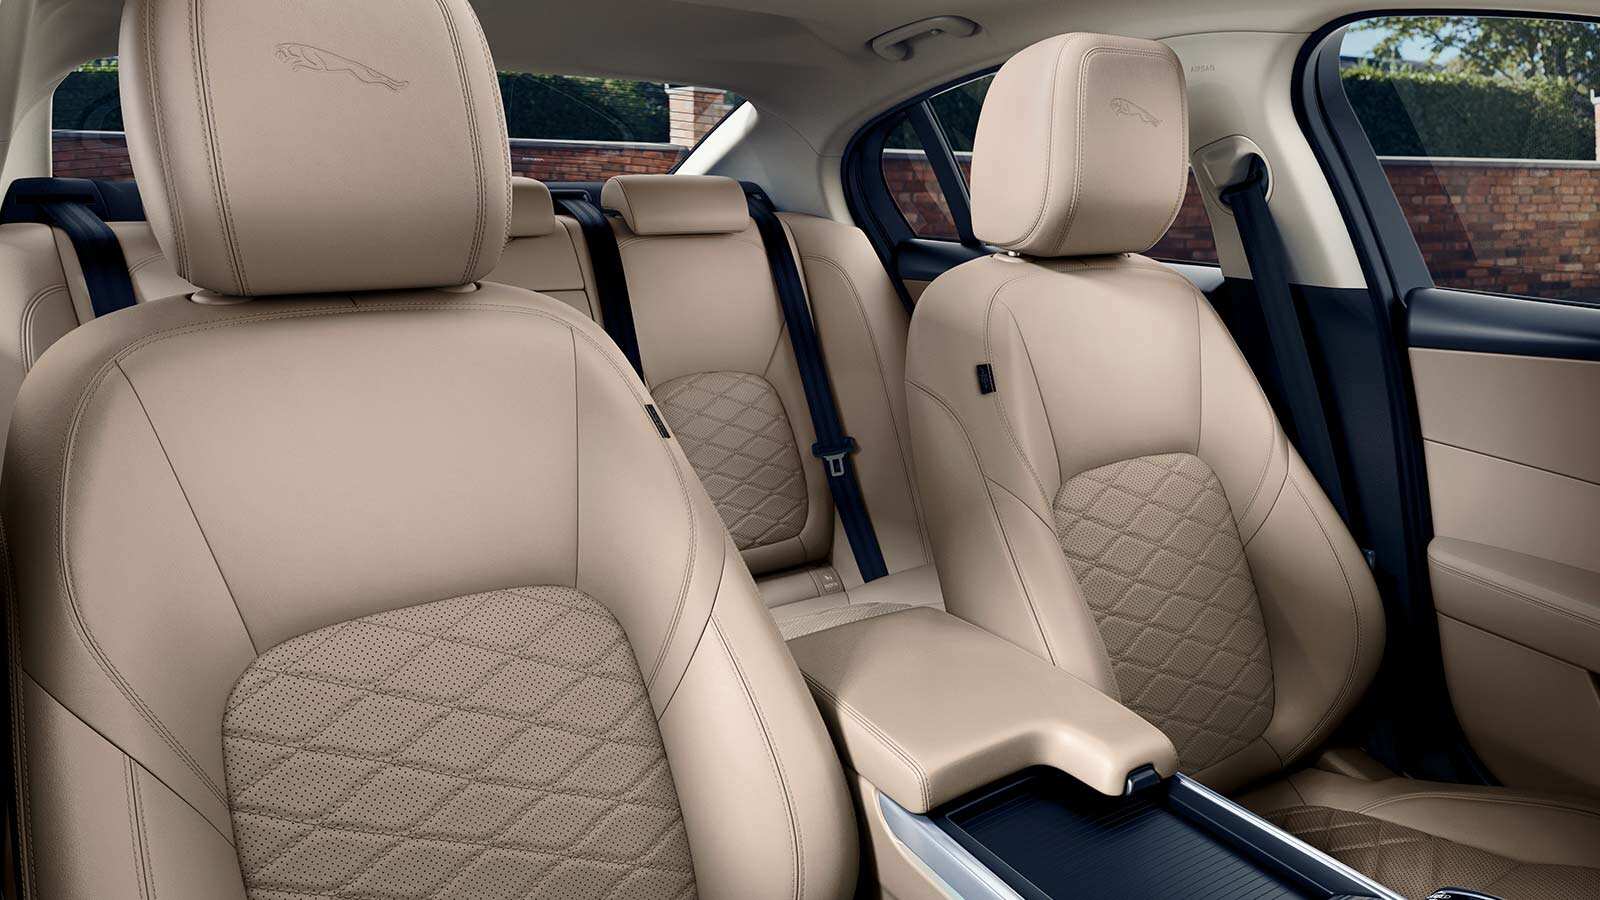 Interior de un Jaguar con los asientos tapizados.